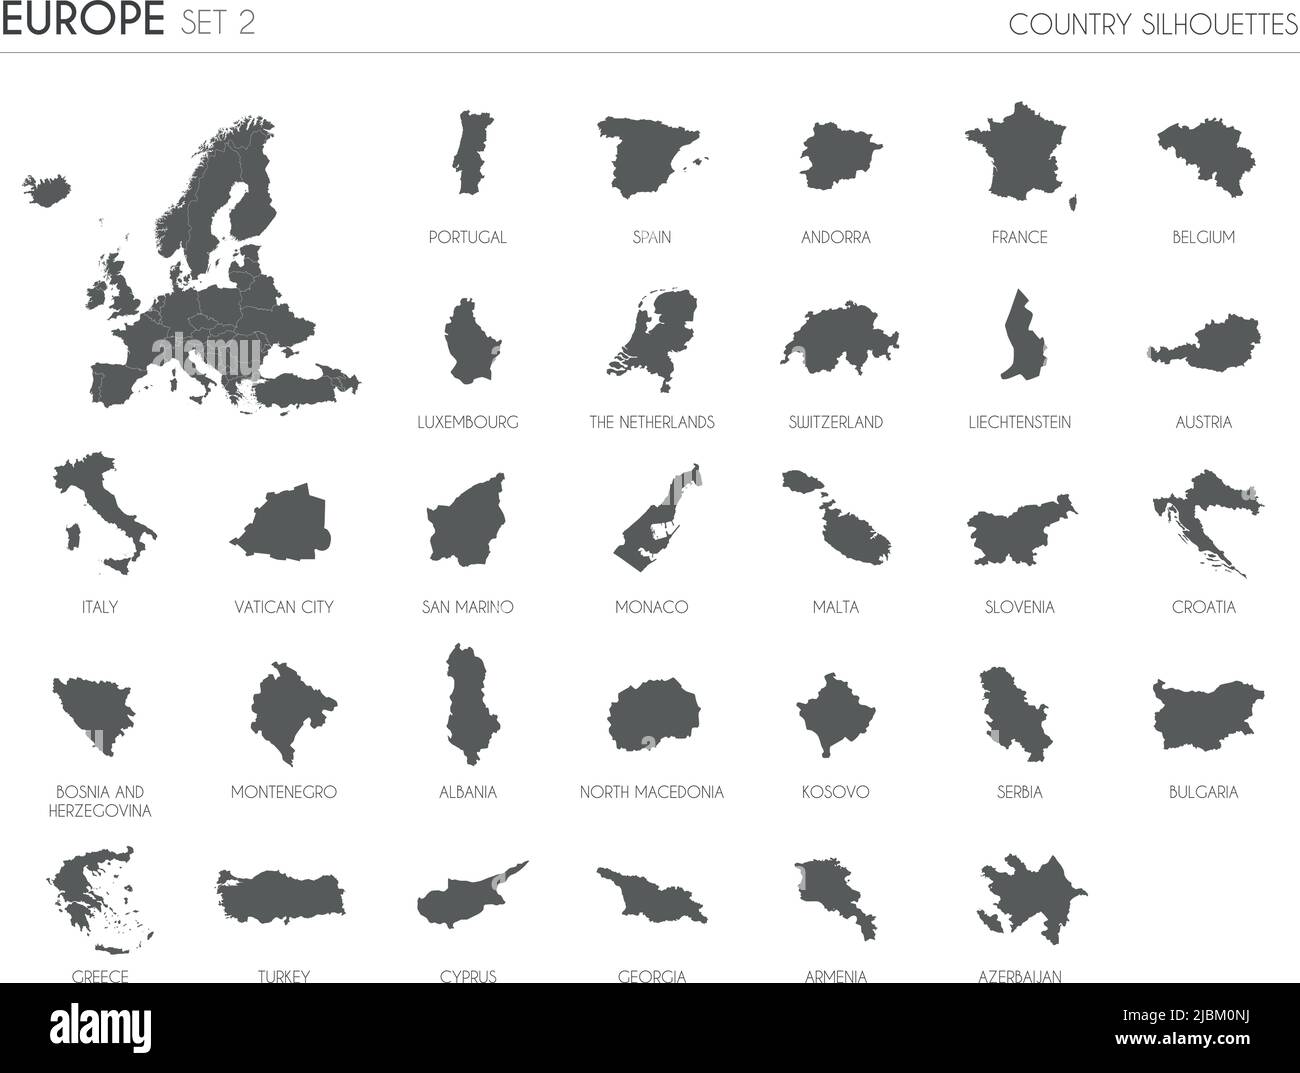 Set aus 30 detailreichen Silhouettenkarten europäischer Länder und Gebiete sowie Vektordarstellung „Karte Europas“. Stock Vektor